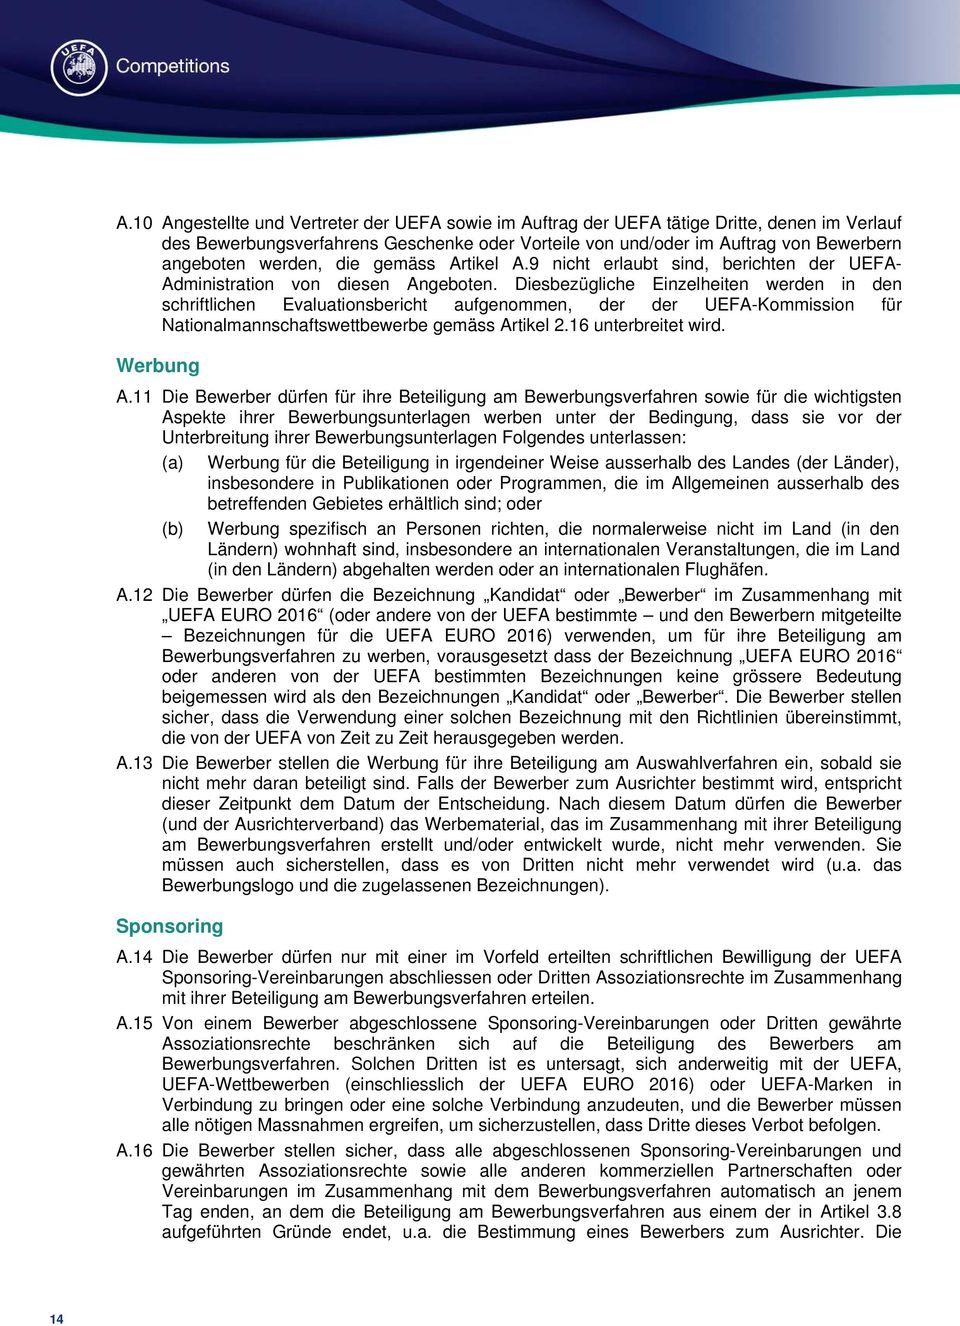 Diesbezügliche Einzelheiten werden in den schriftlichen Evaluationsbericht aufgenommen, der der UEFA-Kommission für Nationalmannschaftswettbewerbe gemäss Artikel 2.16 unterbreitet wird. Werbung A.